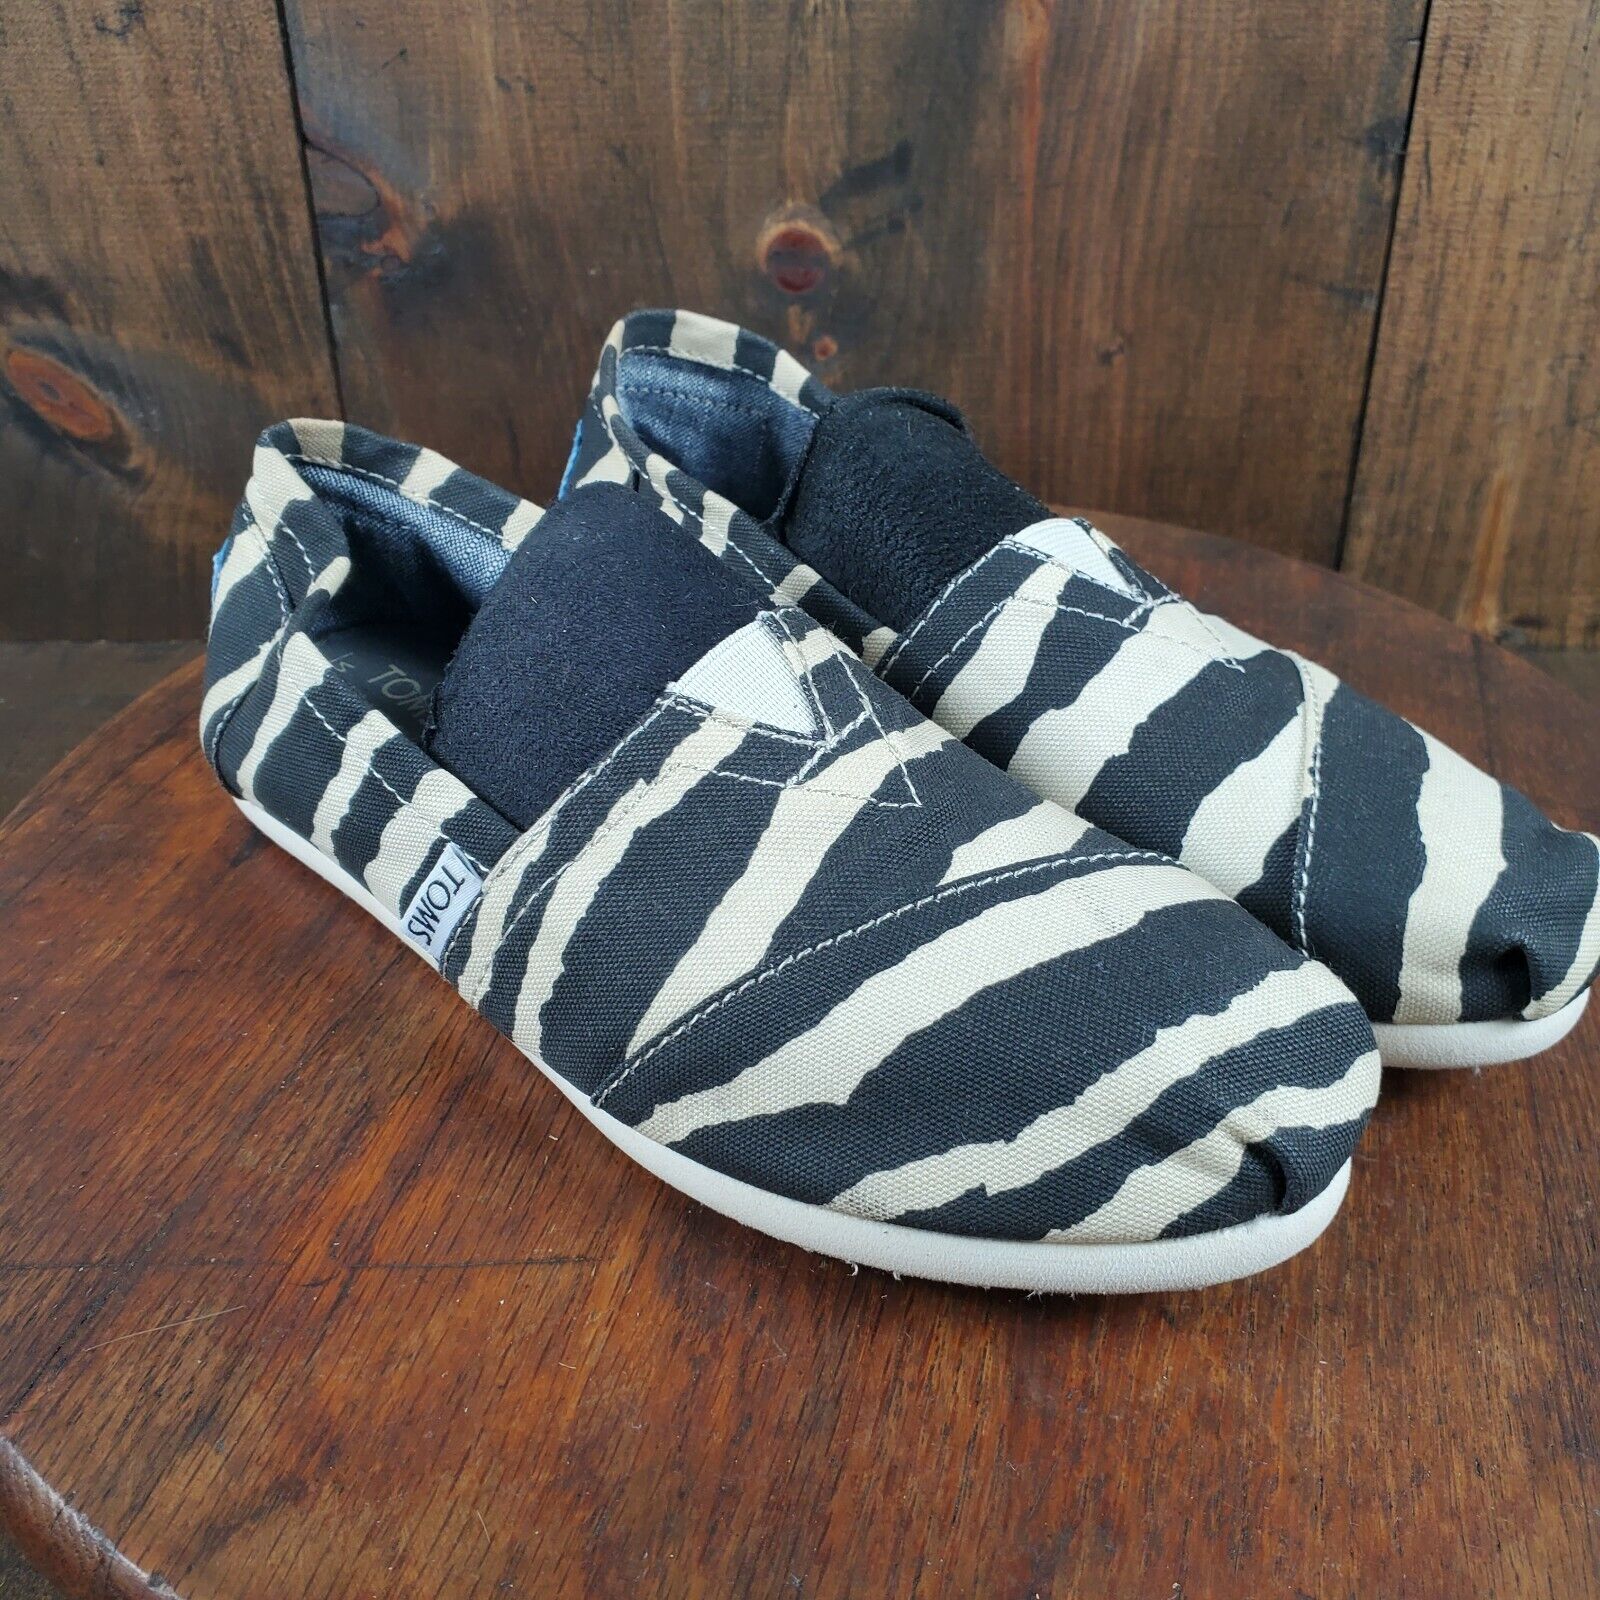 TOMS Women's Black  Tan Striped Zebra Print Canvas Shoes Size 6